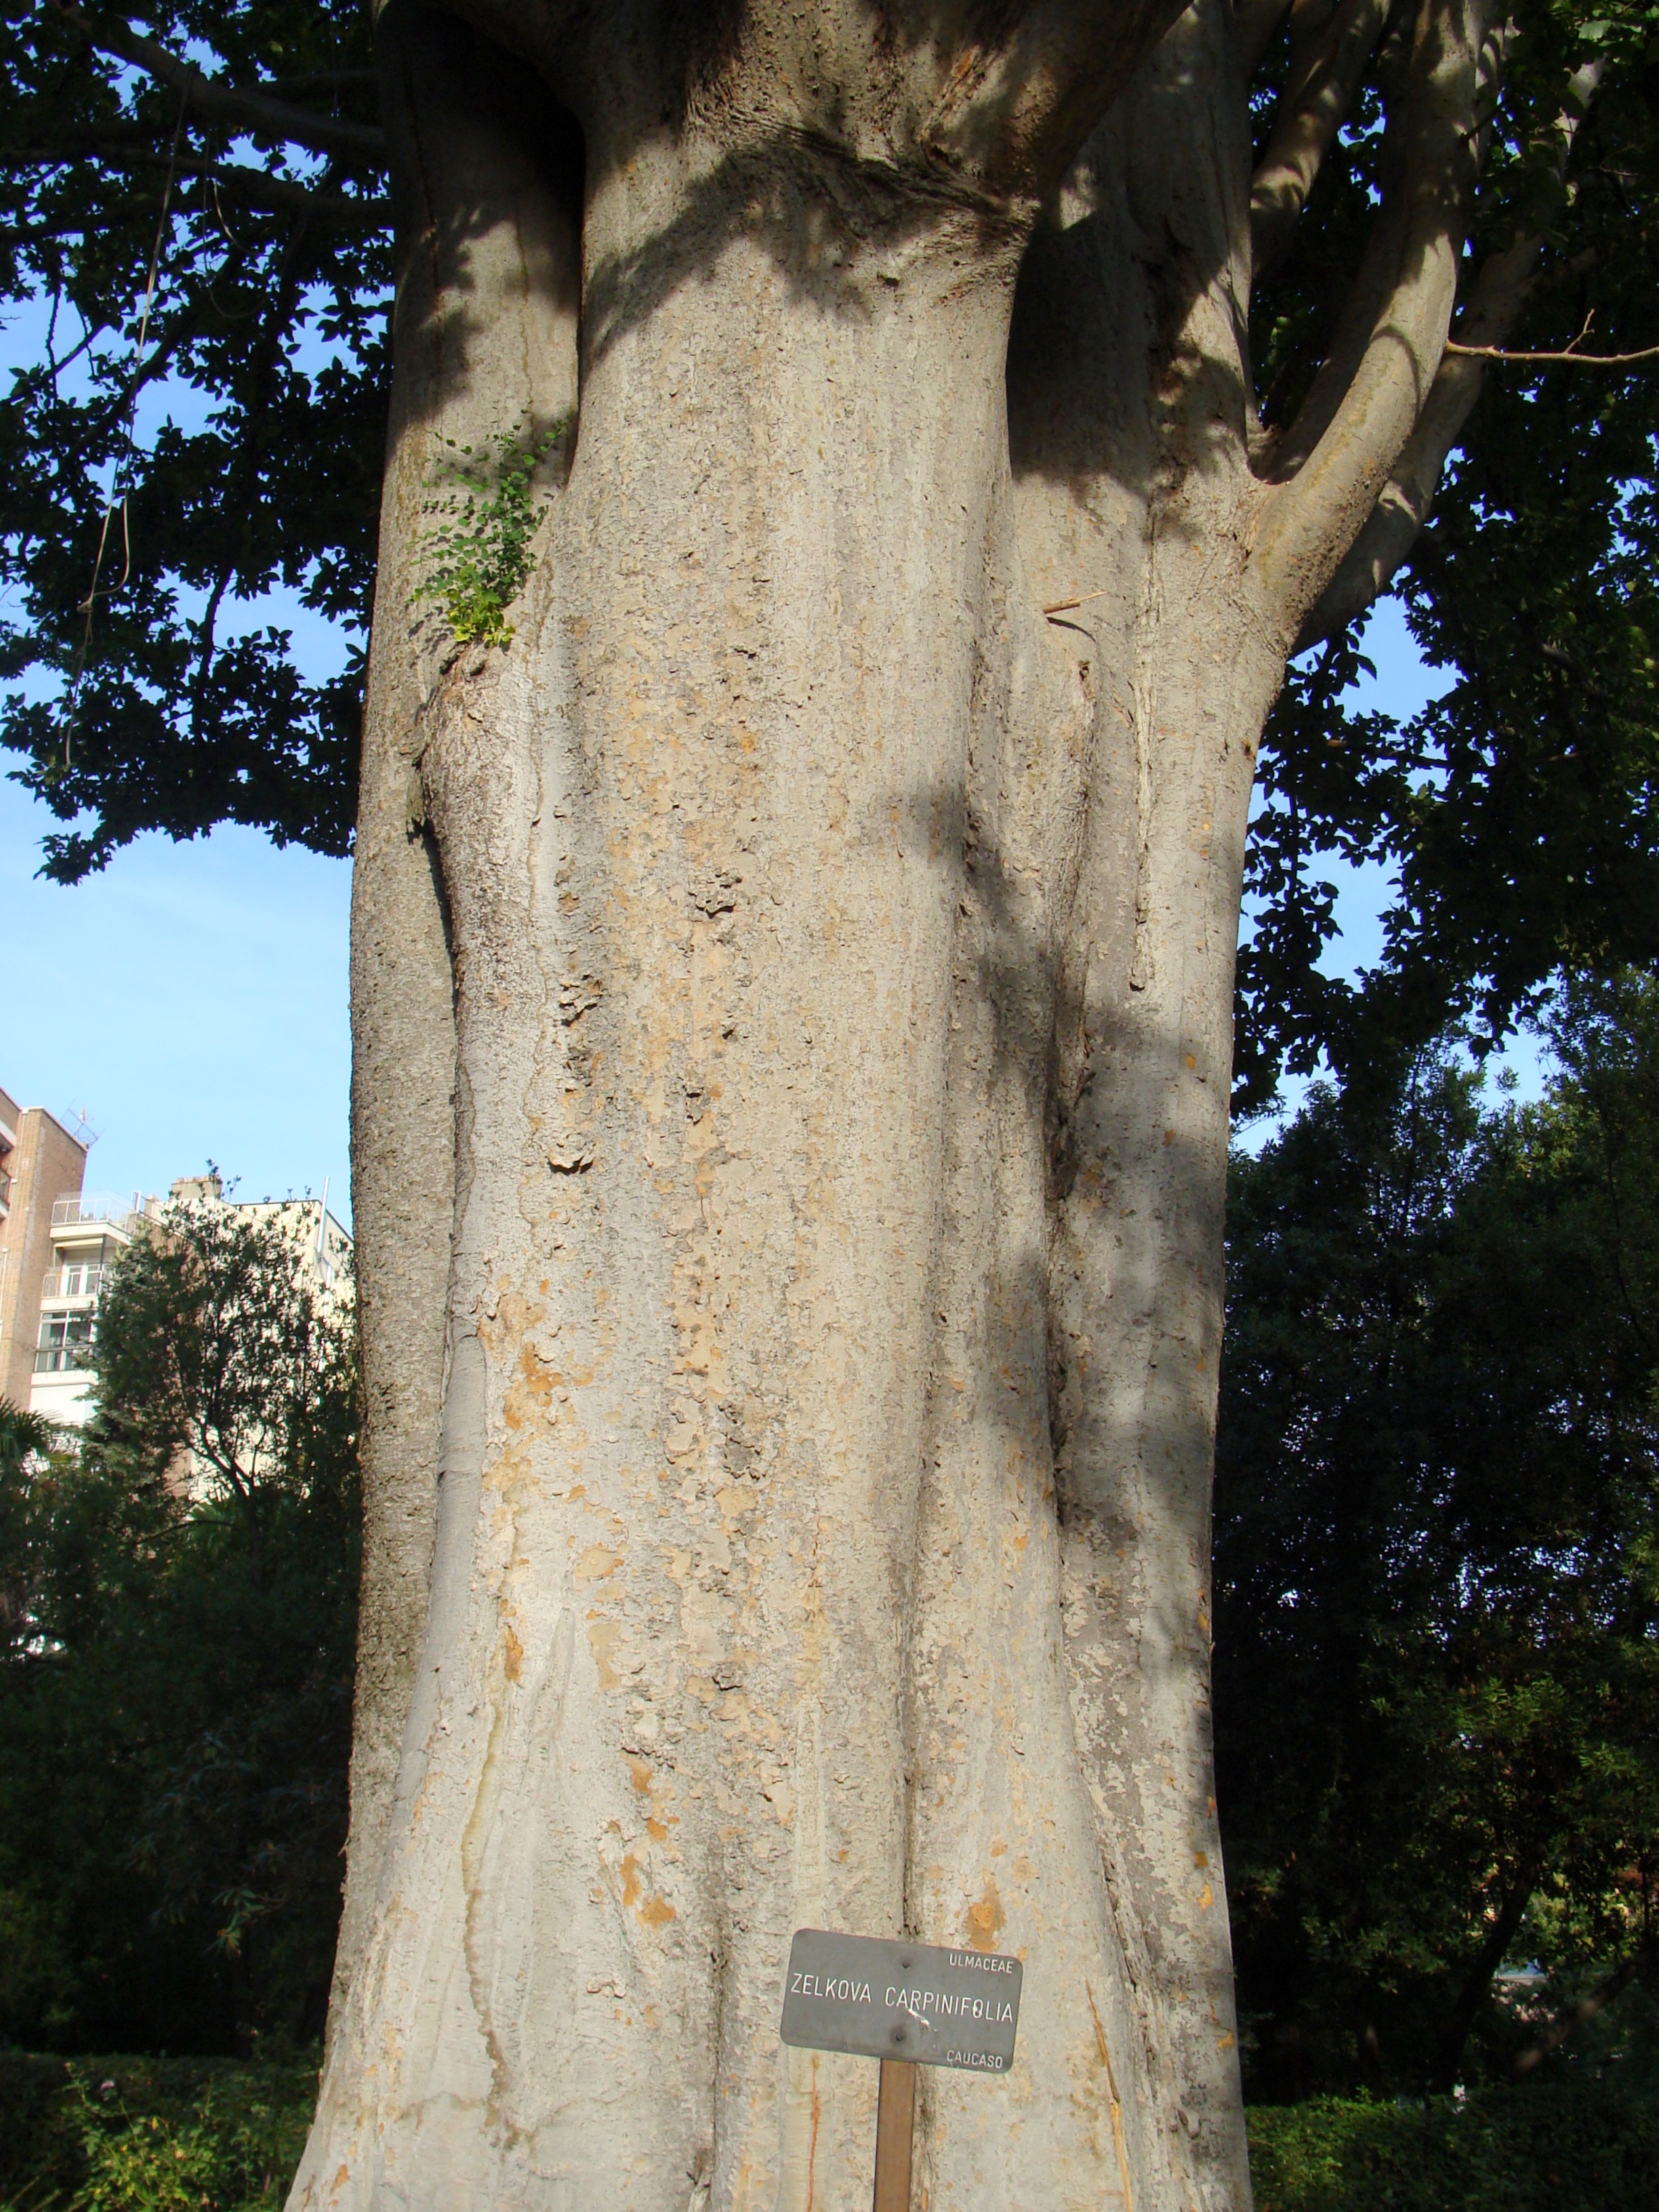 Tejidos que constituyen el tronco de un árbol (corte transversal). En